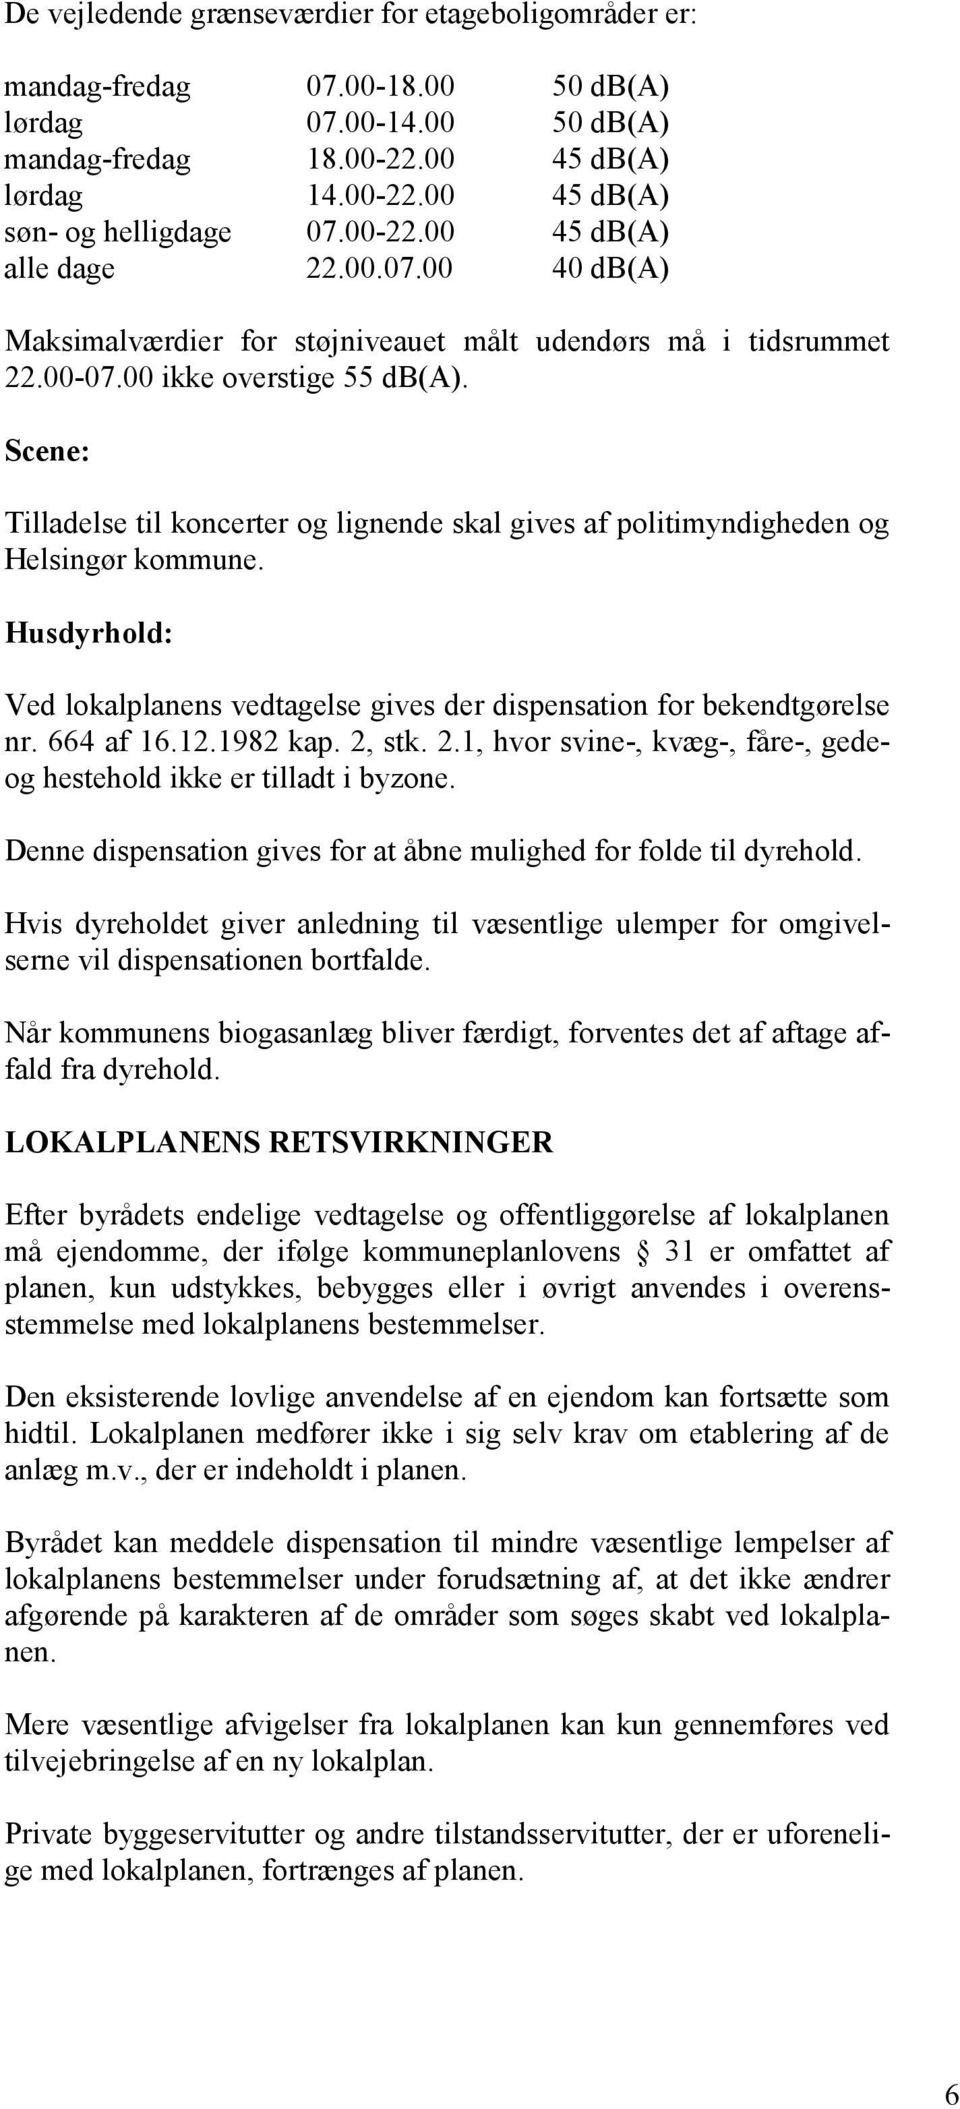 00 ikke overstige 55 db(a). Scene: Tilladelse til koncerter og lignende skal gives af politimyndigheden og Helsingør kommune.